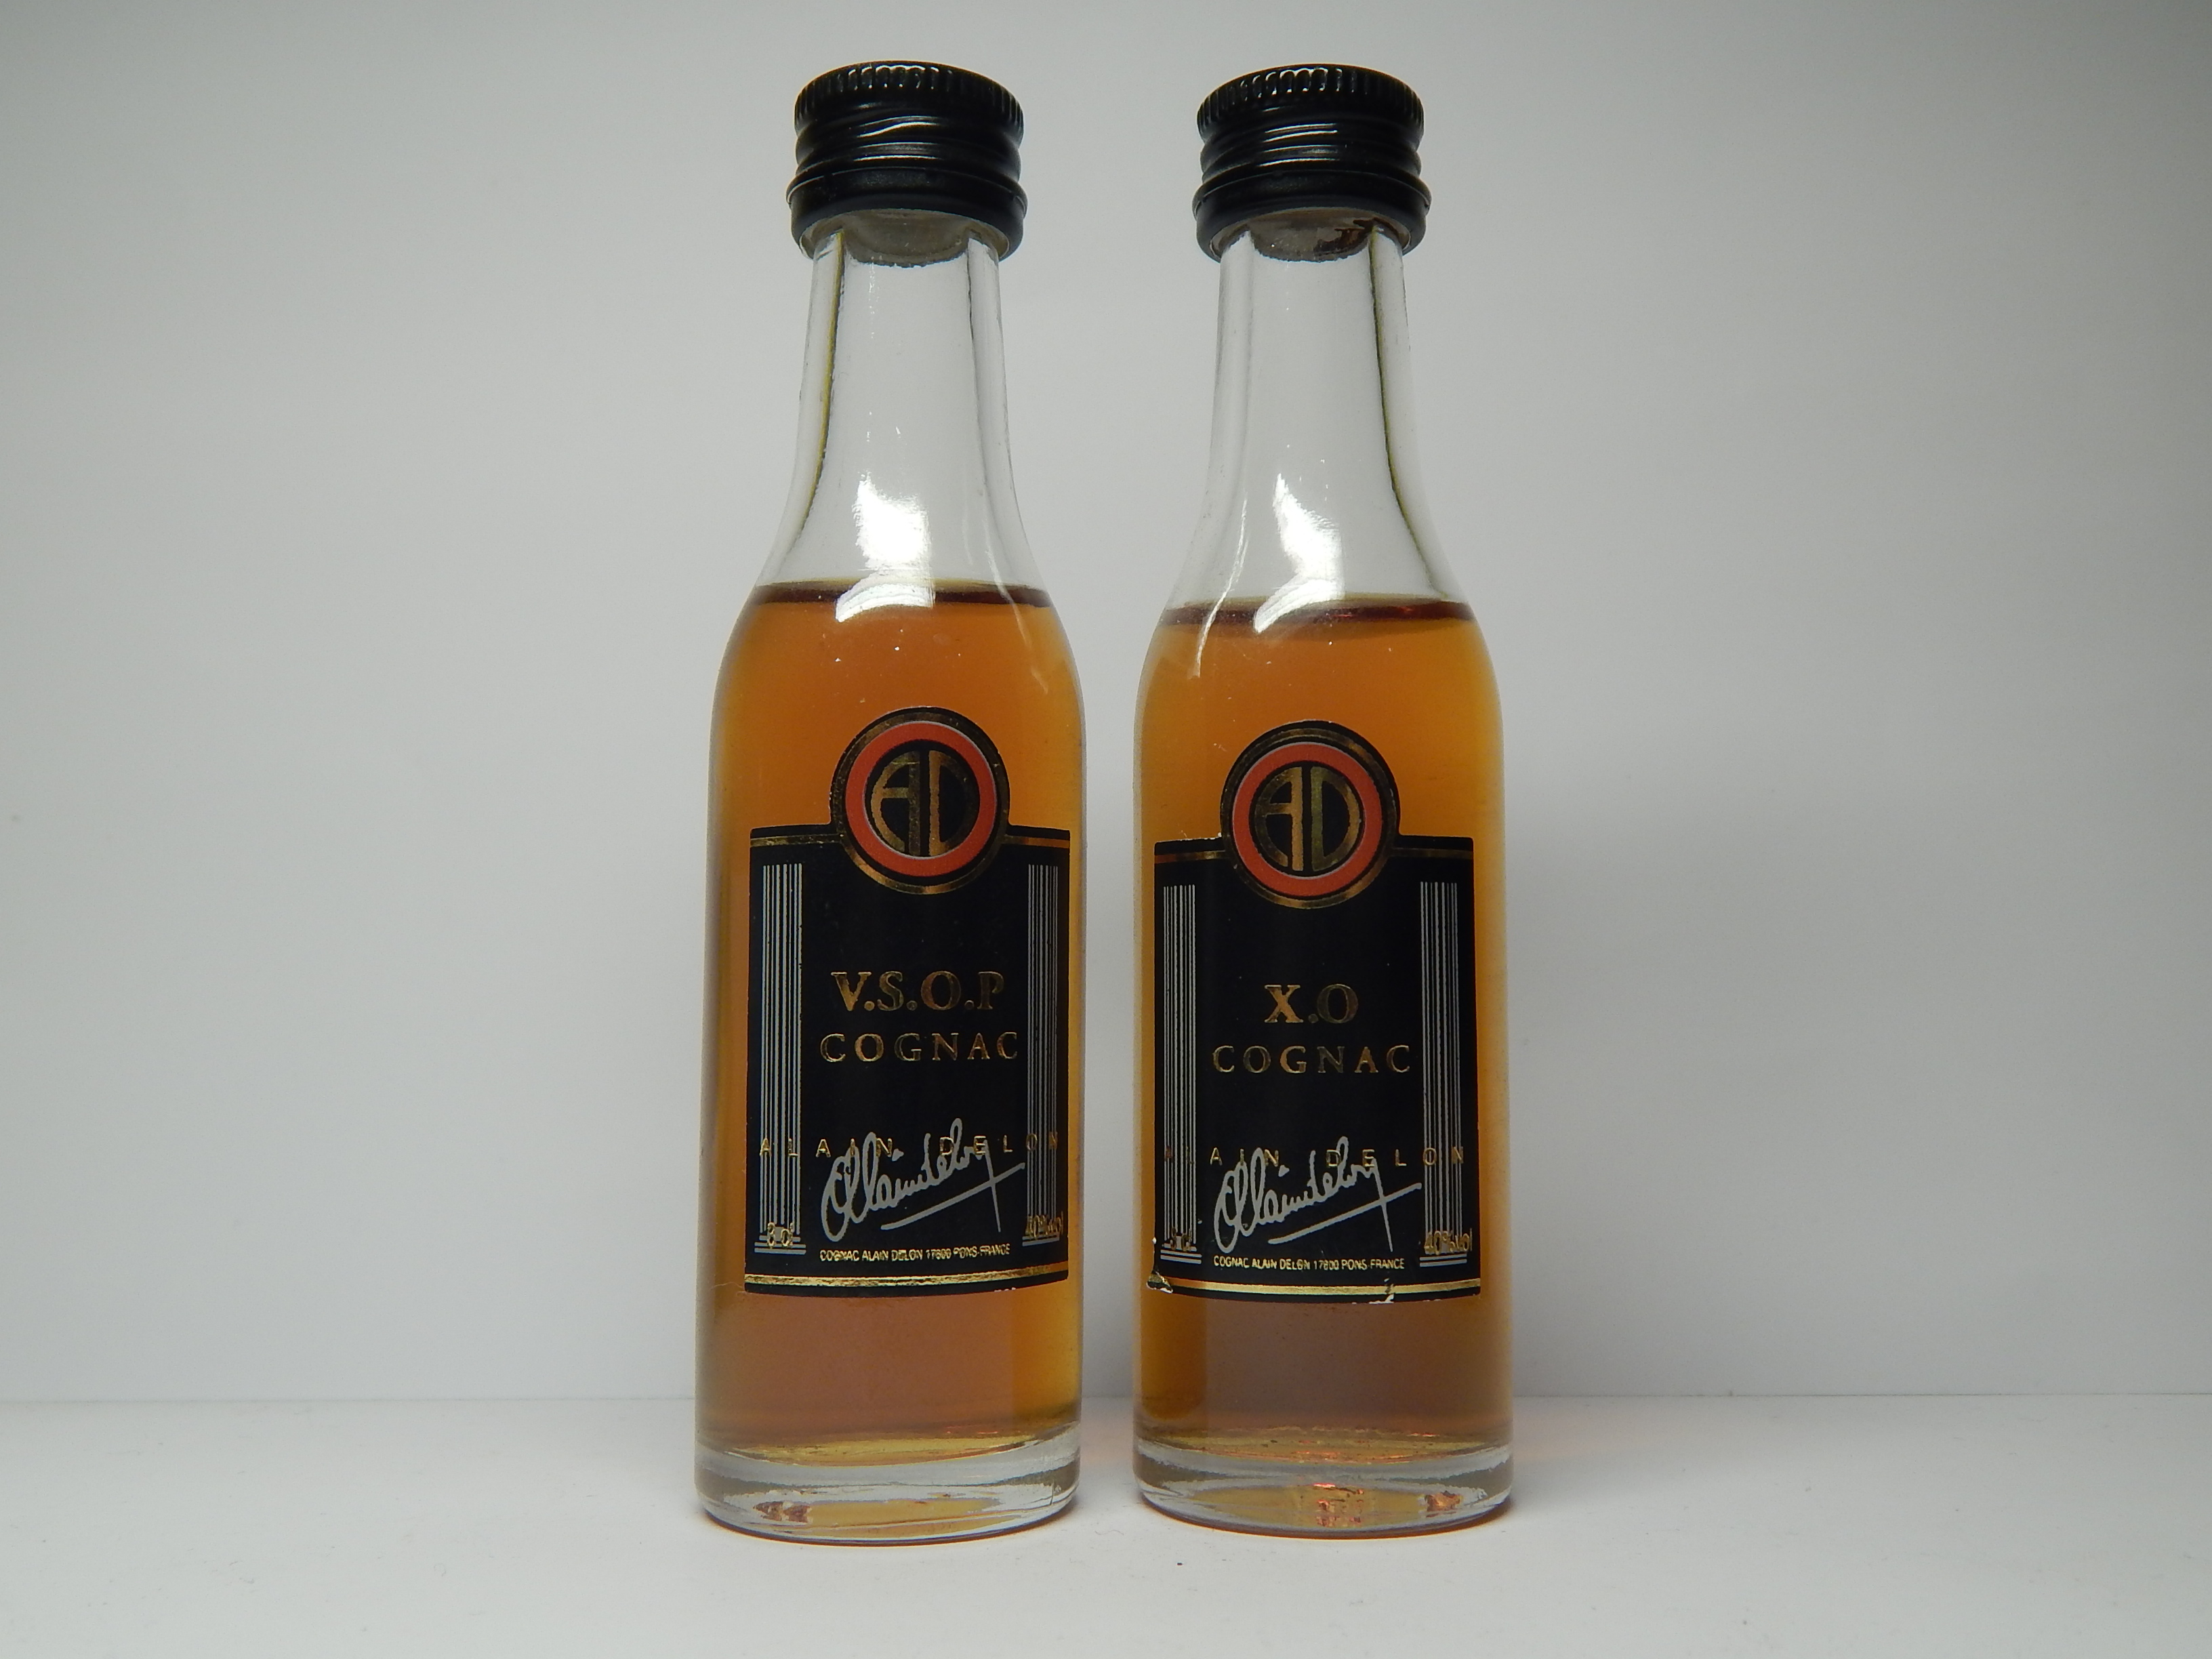 ALAIN DELON V.S.O.P. - XO Cognac